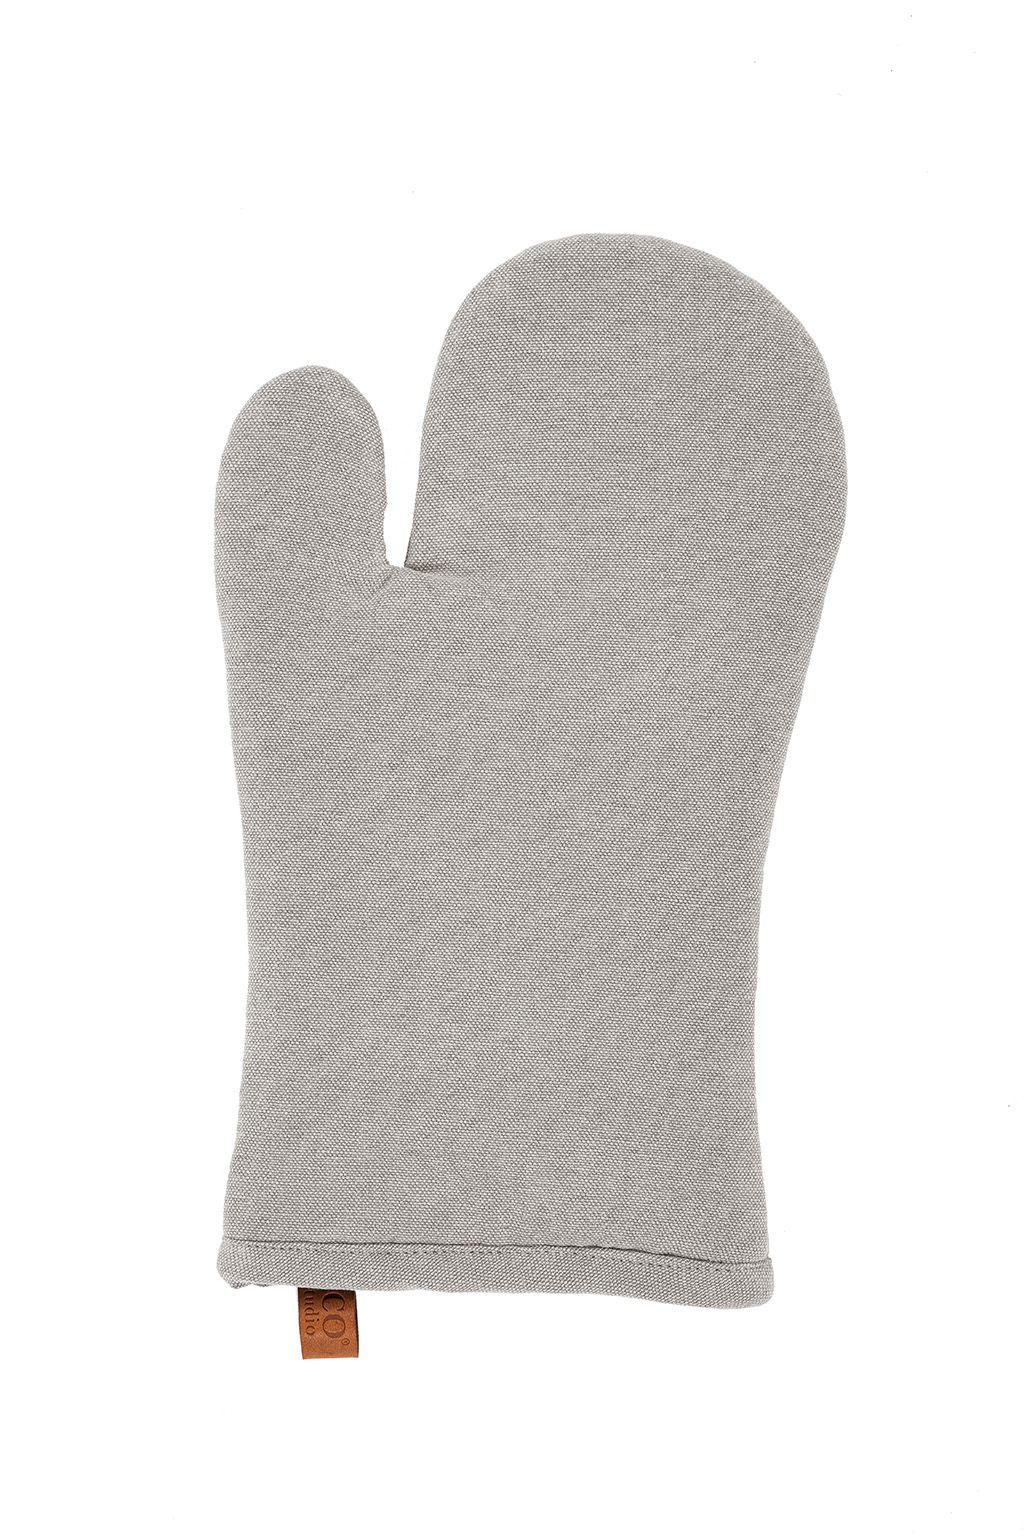 Glove HAVANA 18x32cm, light grey